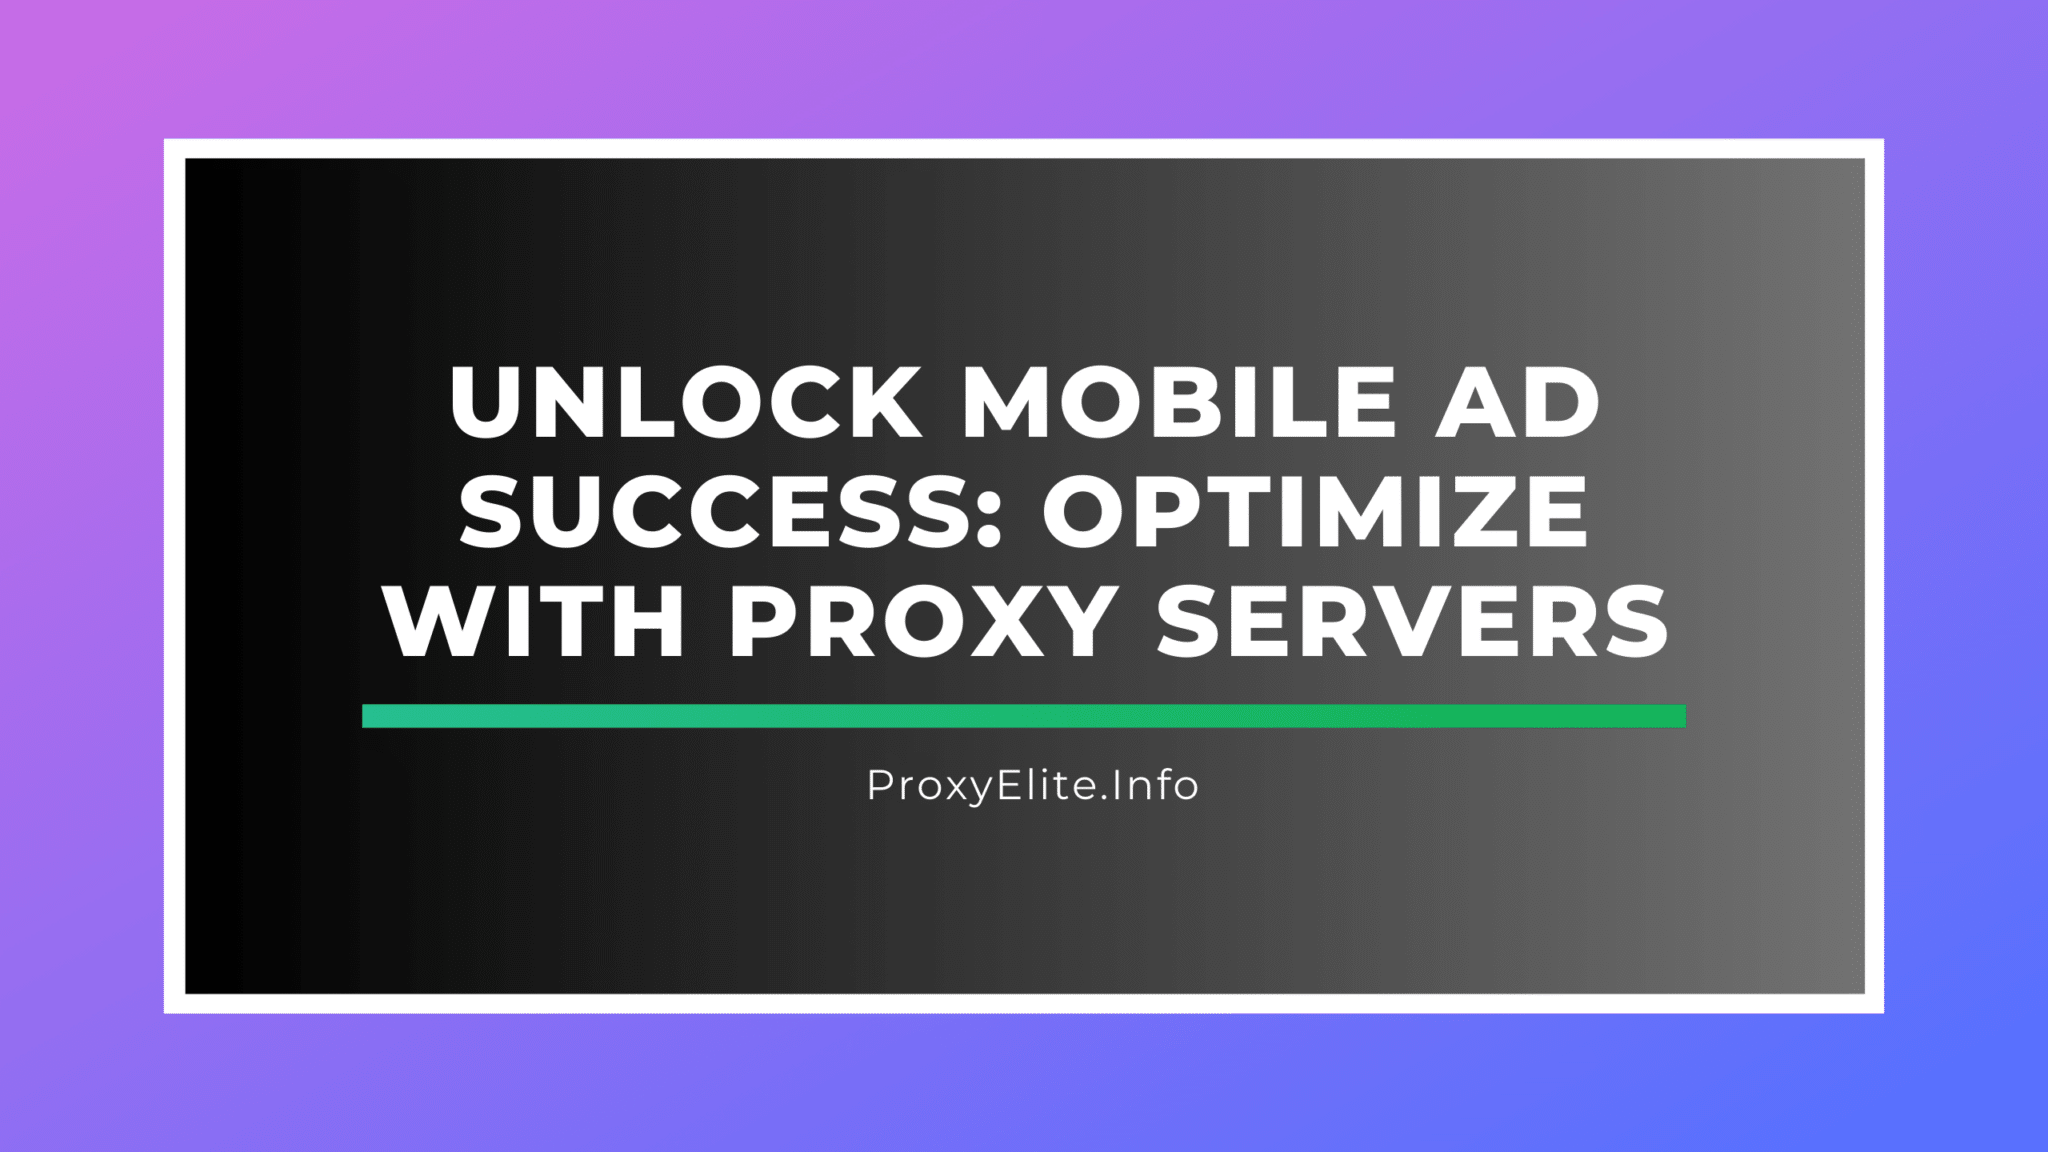 Розблокуйте успіх мобільної реклами: оптимізуйте за допомогою проксі-серверів